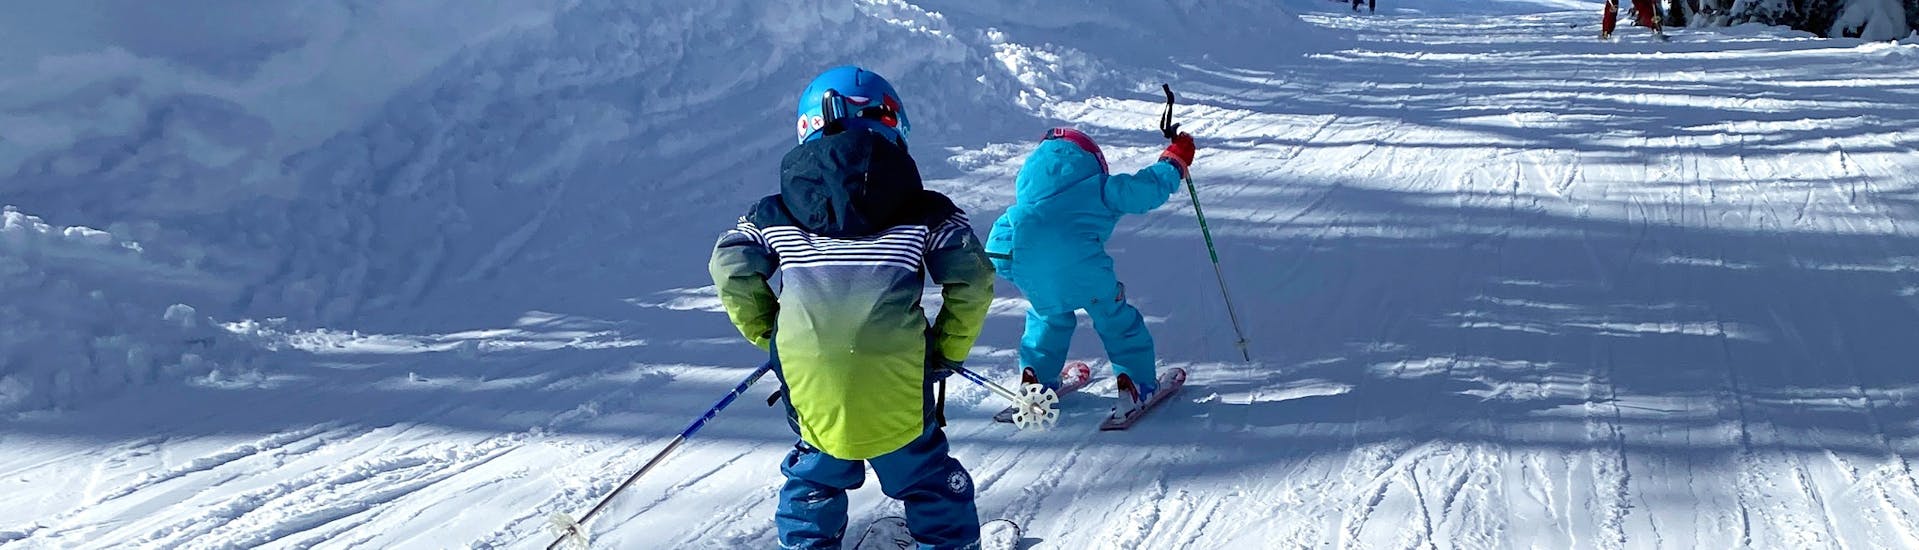 Un enfant descend sa première piste lors de son Premier Cours particulier de ski Enfants (3-5 ans) avec Evolution 2 Peisey Vallandry.